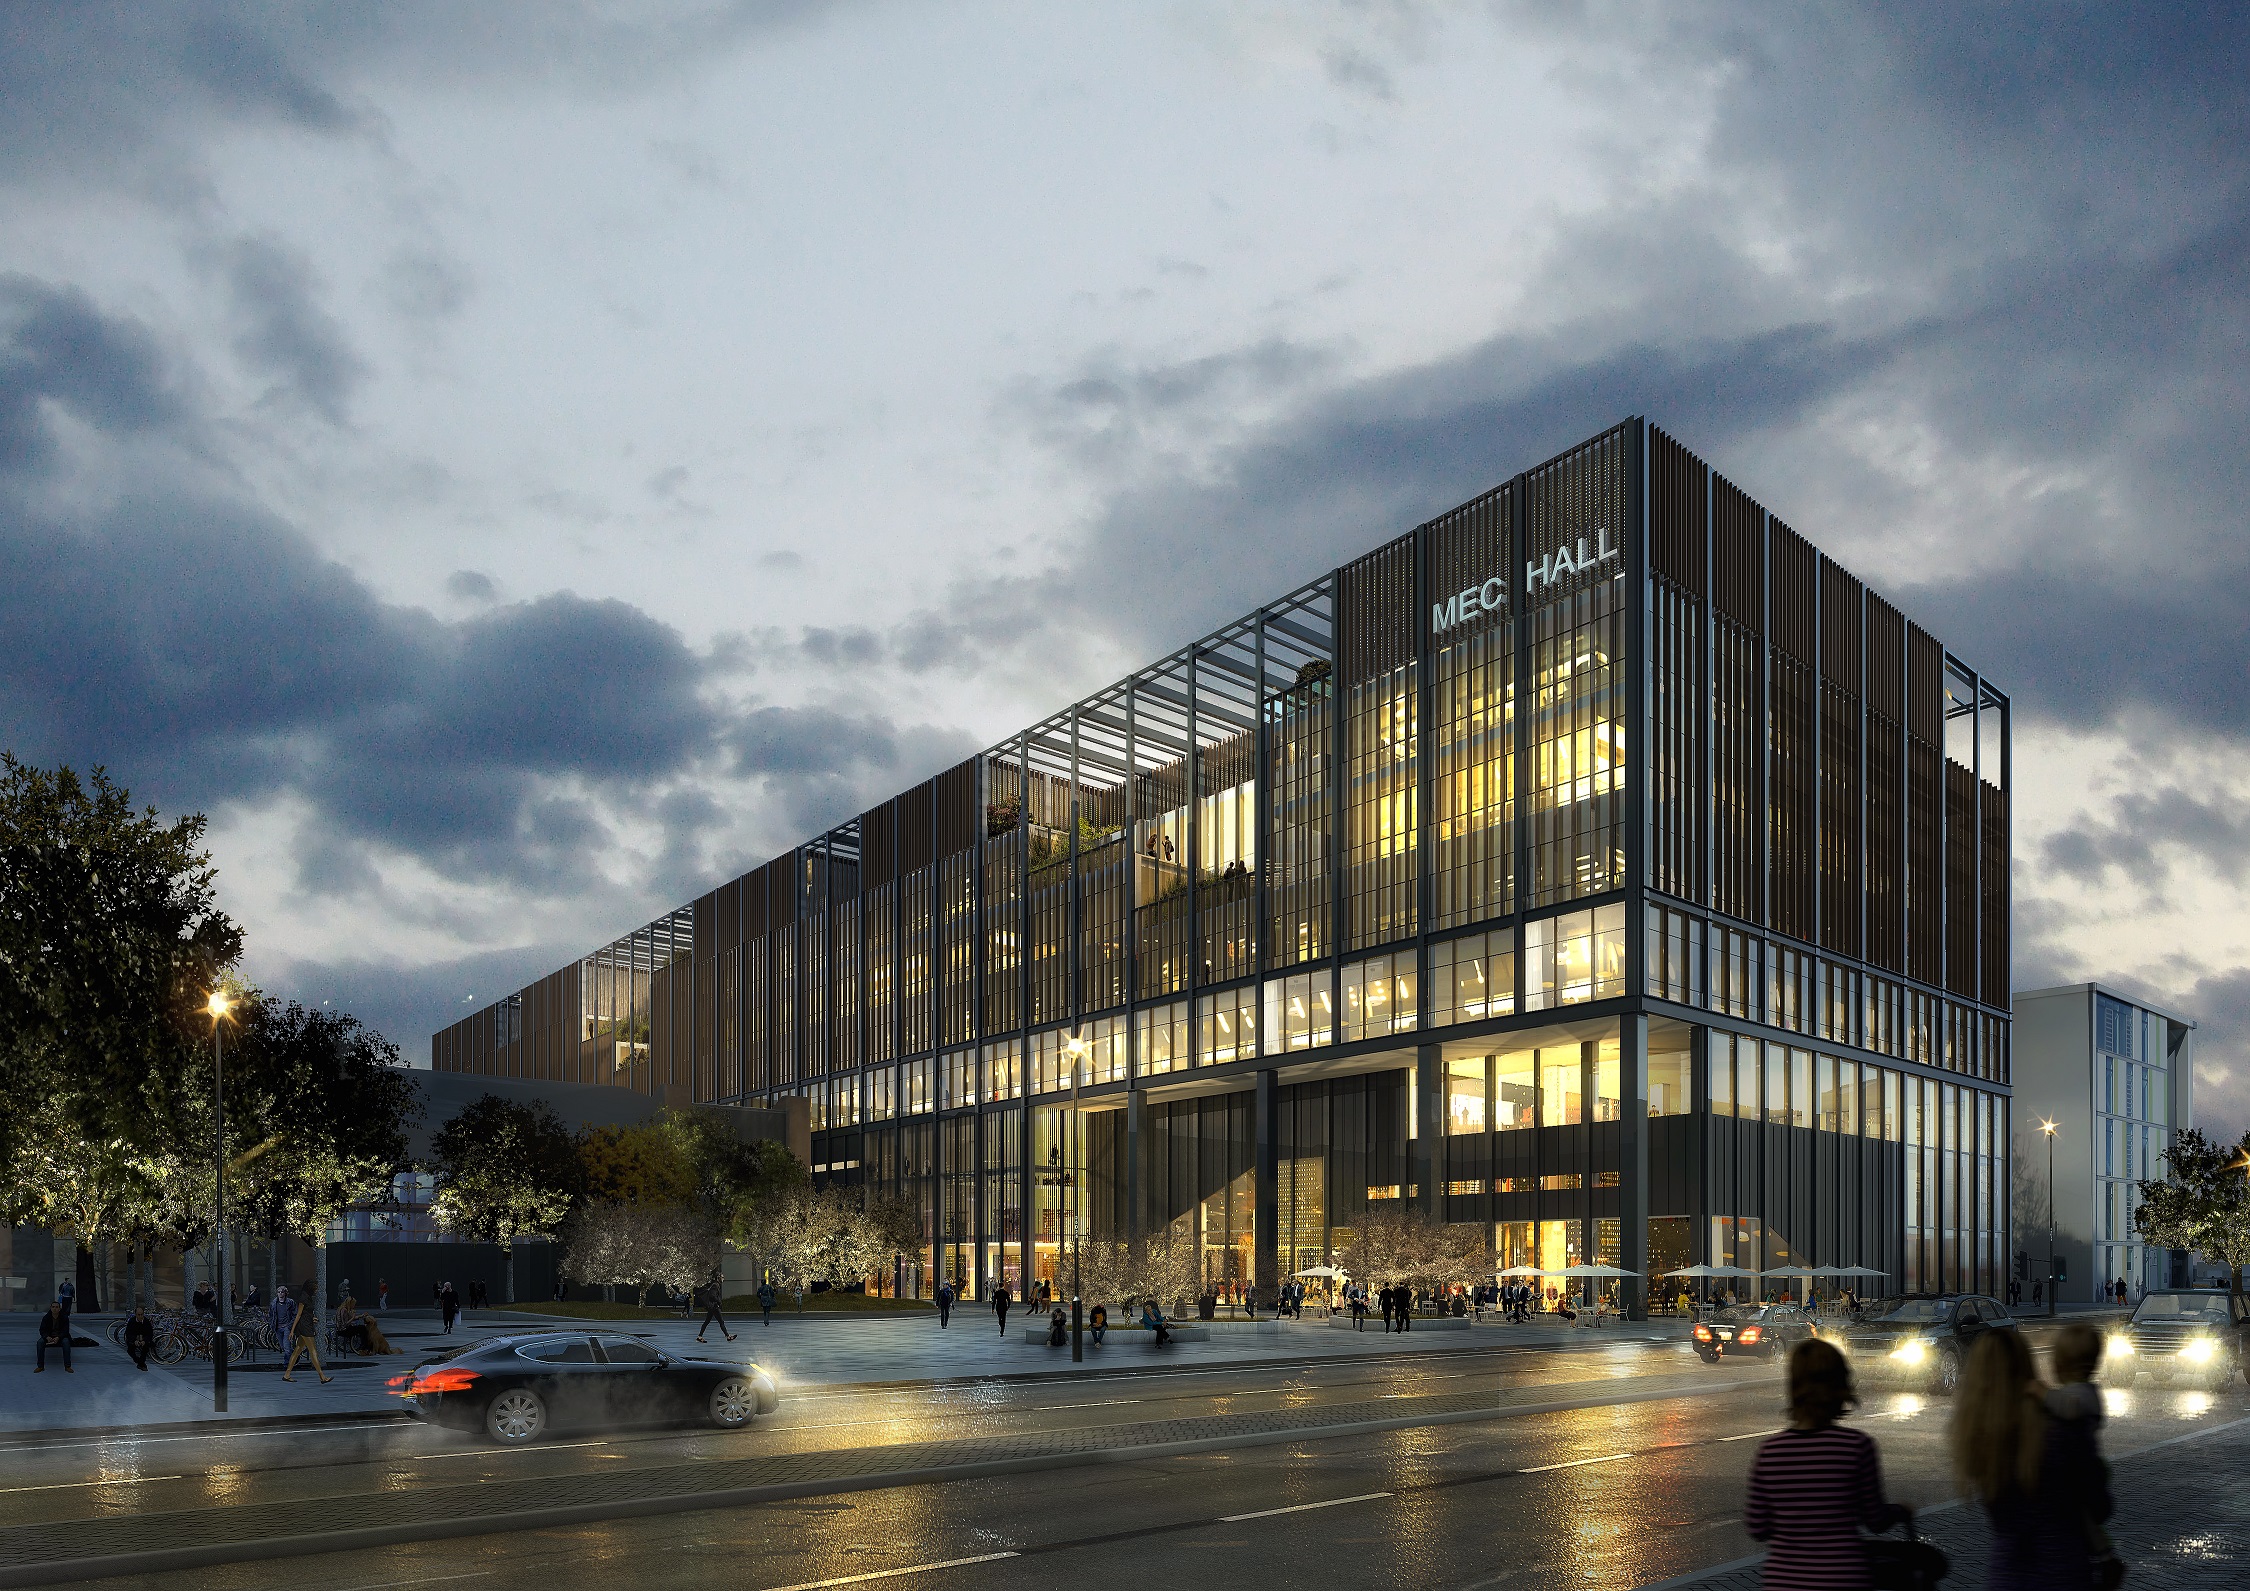 Sipral dodá modulovou fasádu univerzitní budově MEC Hall v Manchesteru